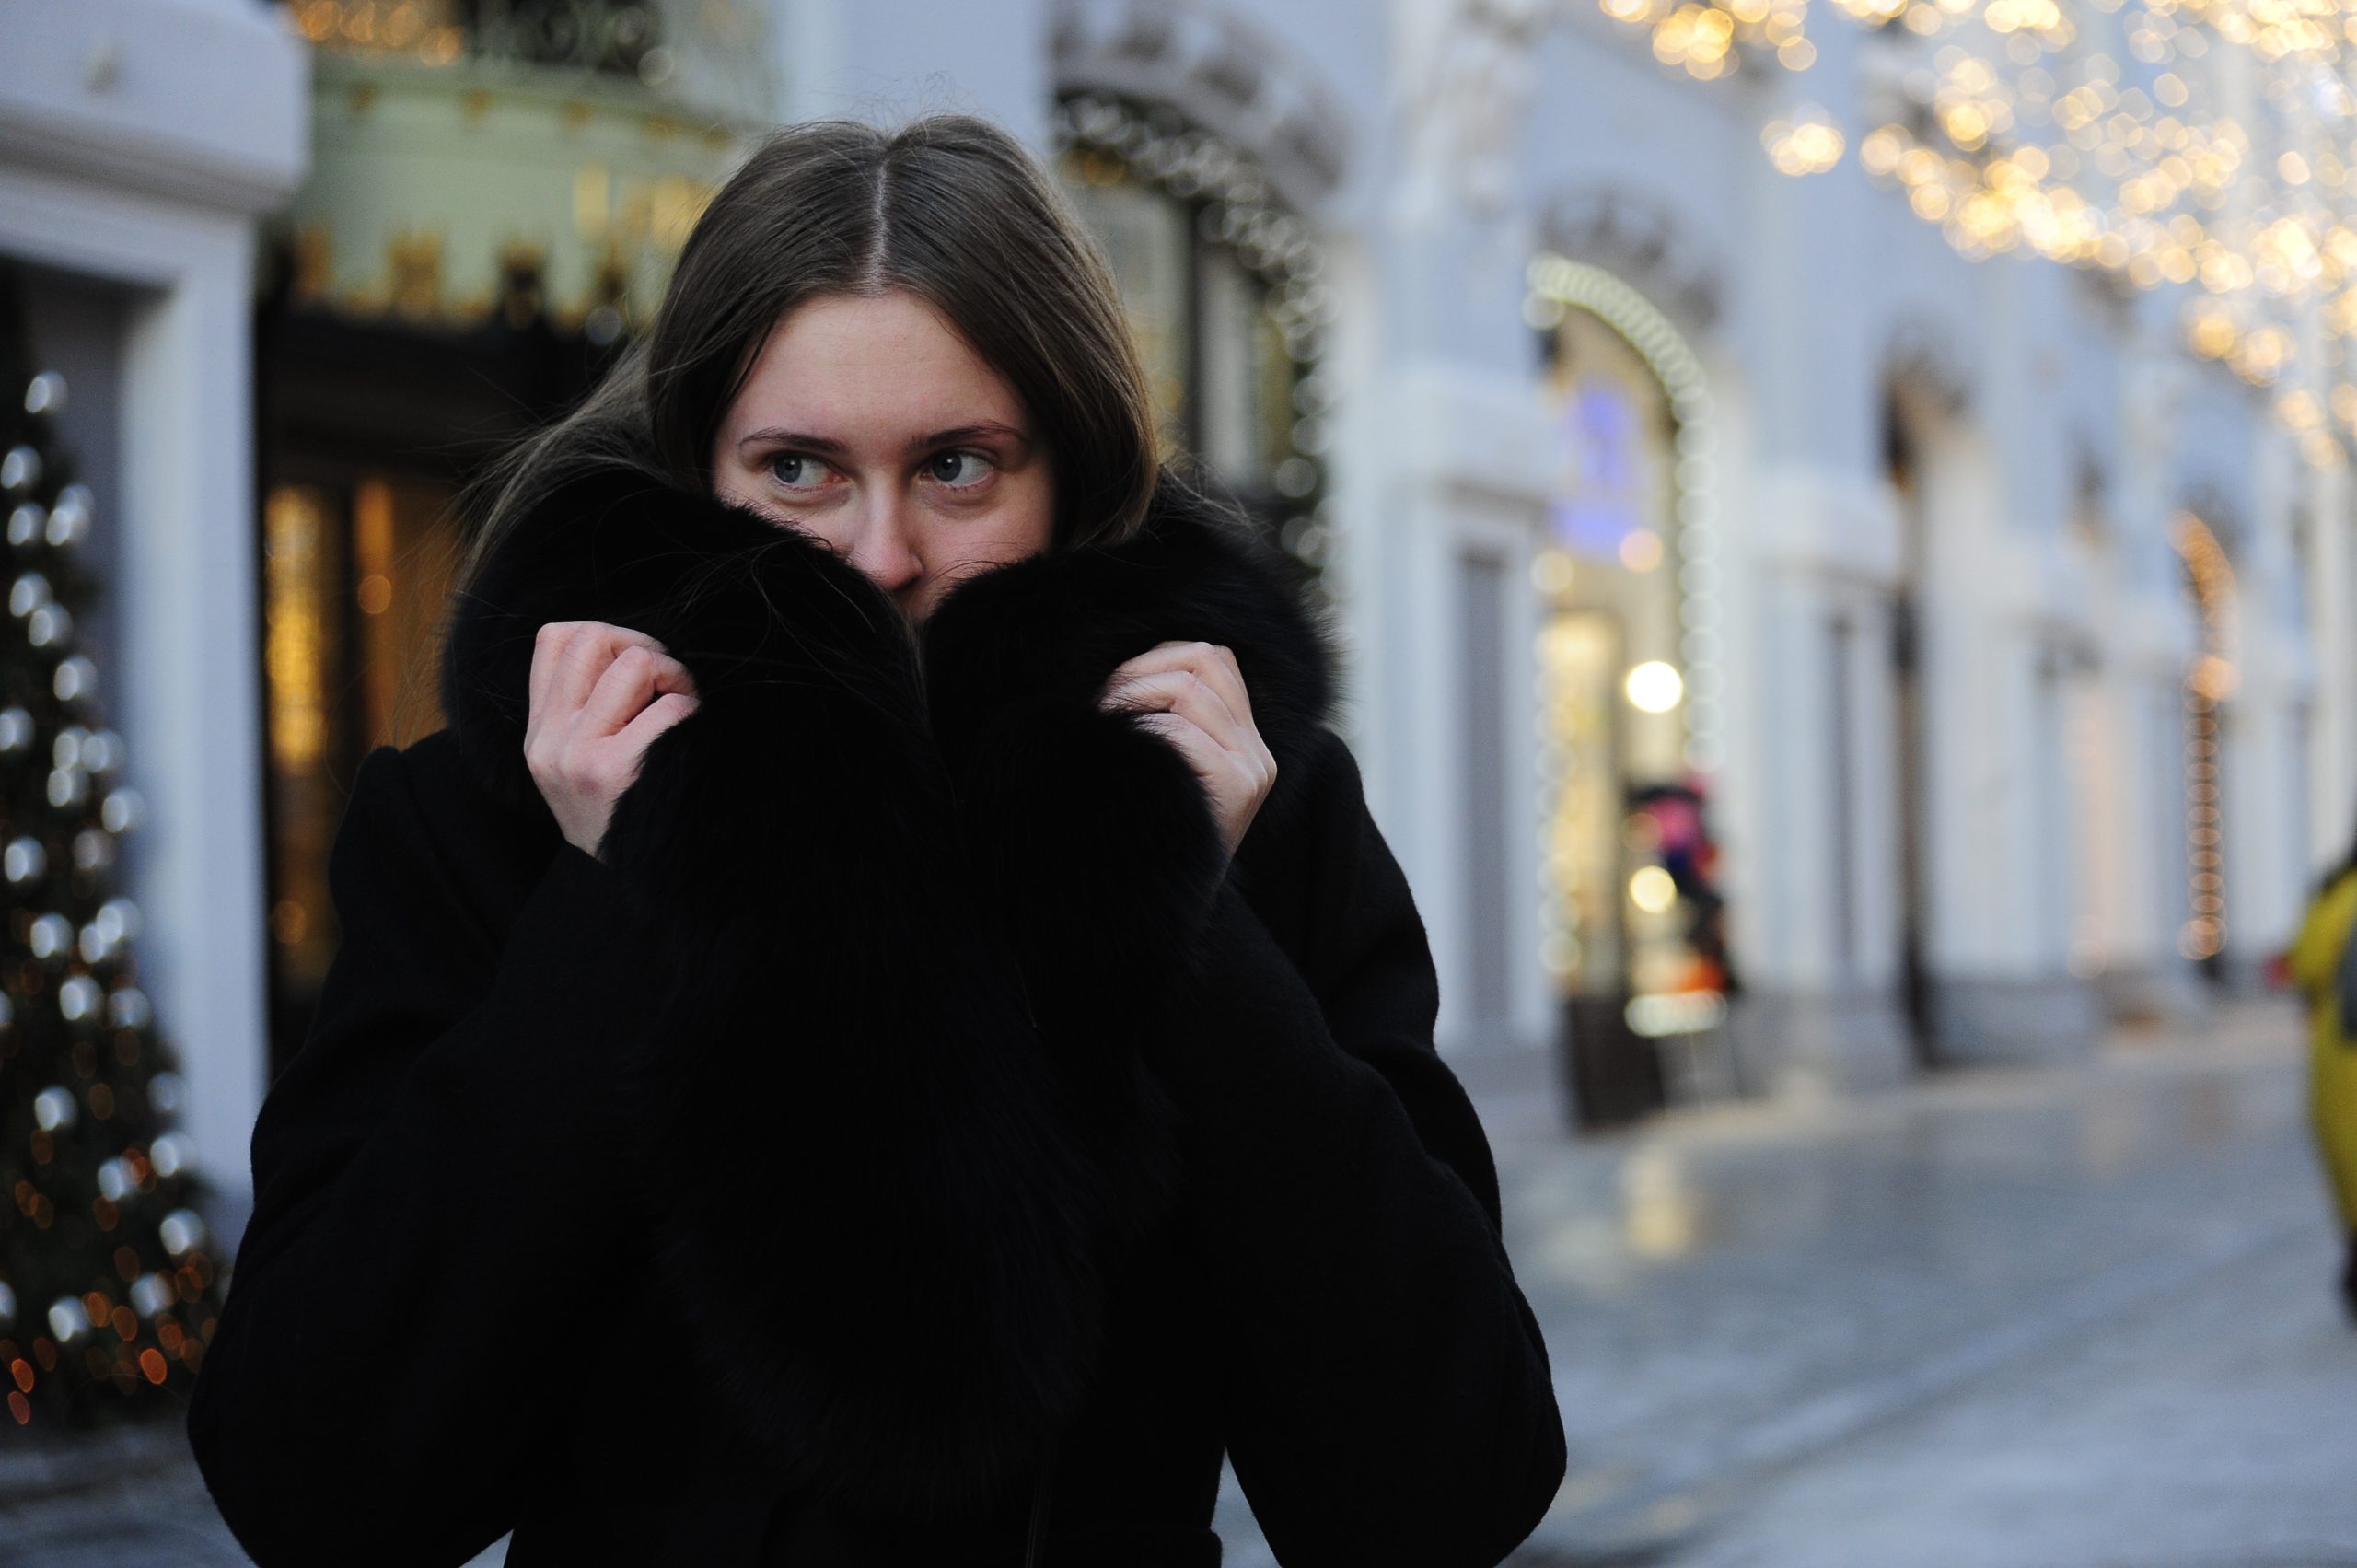 Жителей столицы проинформировали о похолодании 21 декабря после недолгой оттепели. Фото: Пелагия Замятина, «Вечерняя Москва»